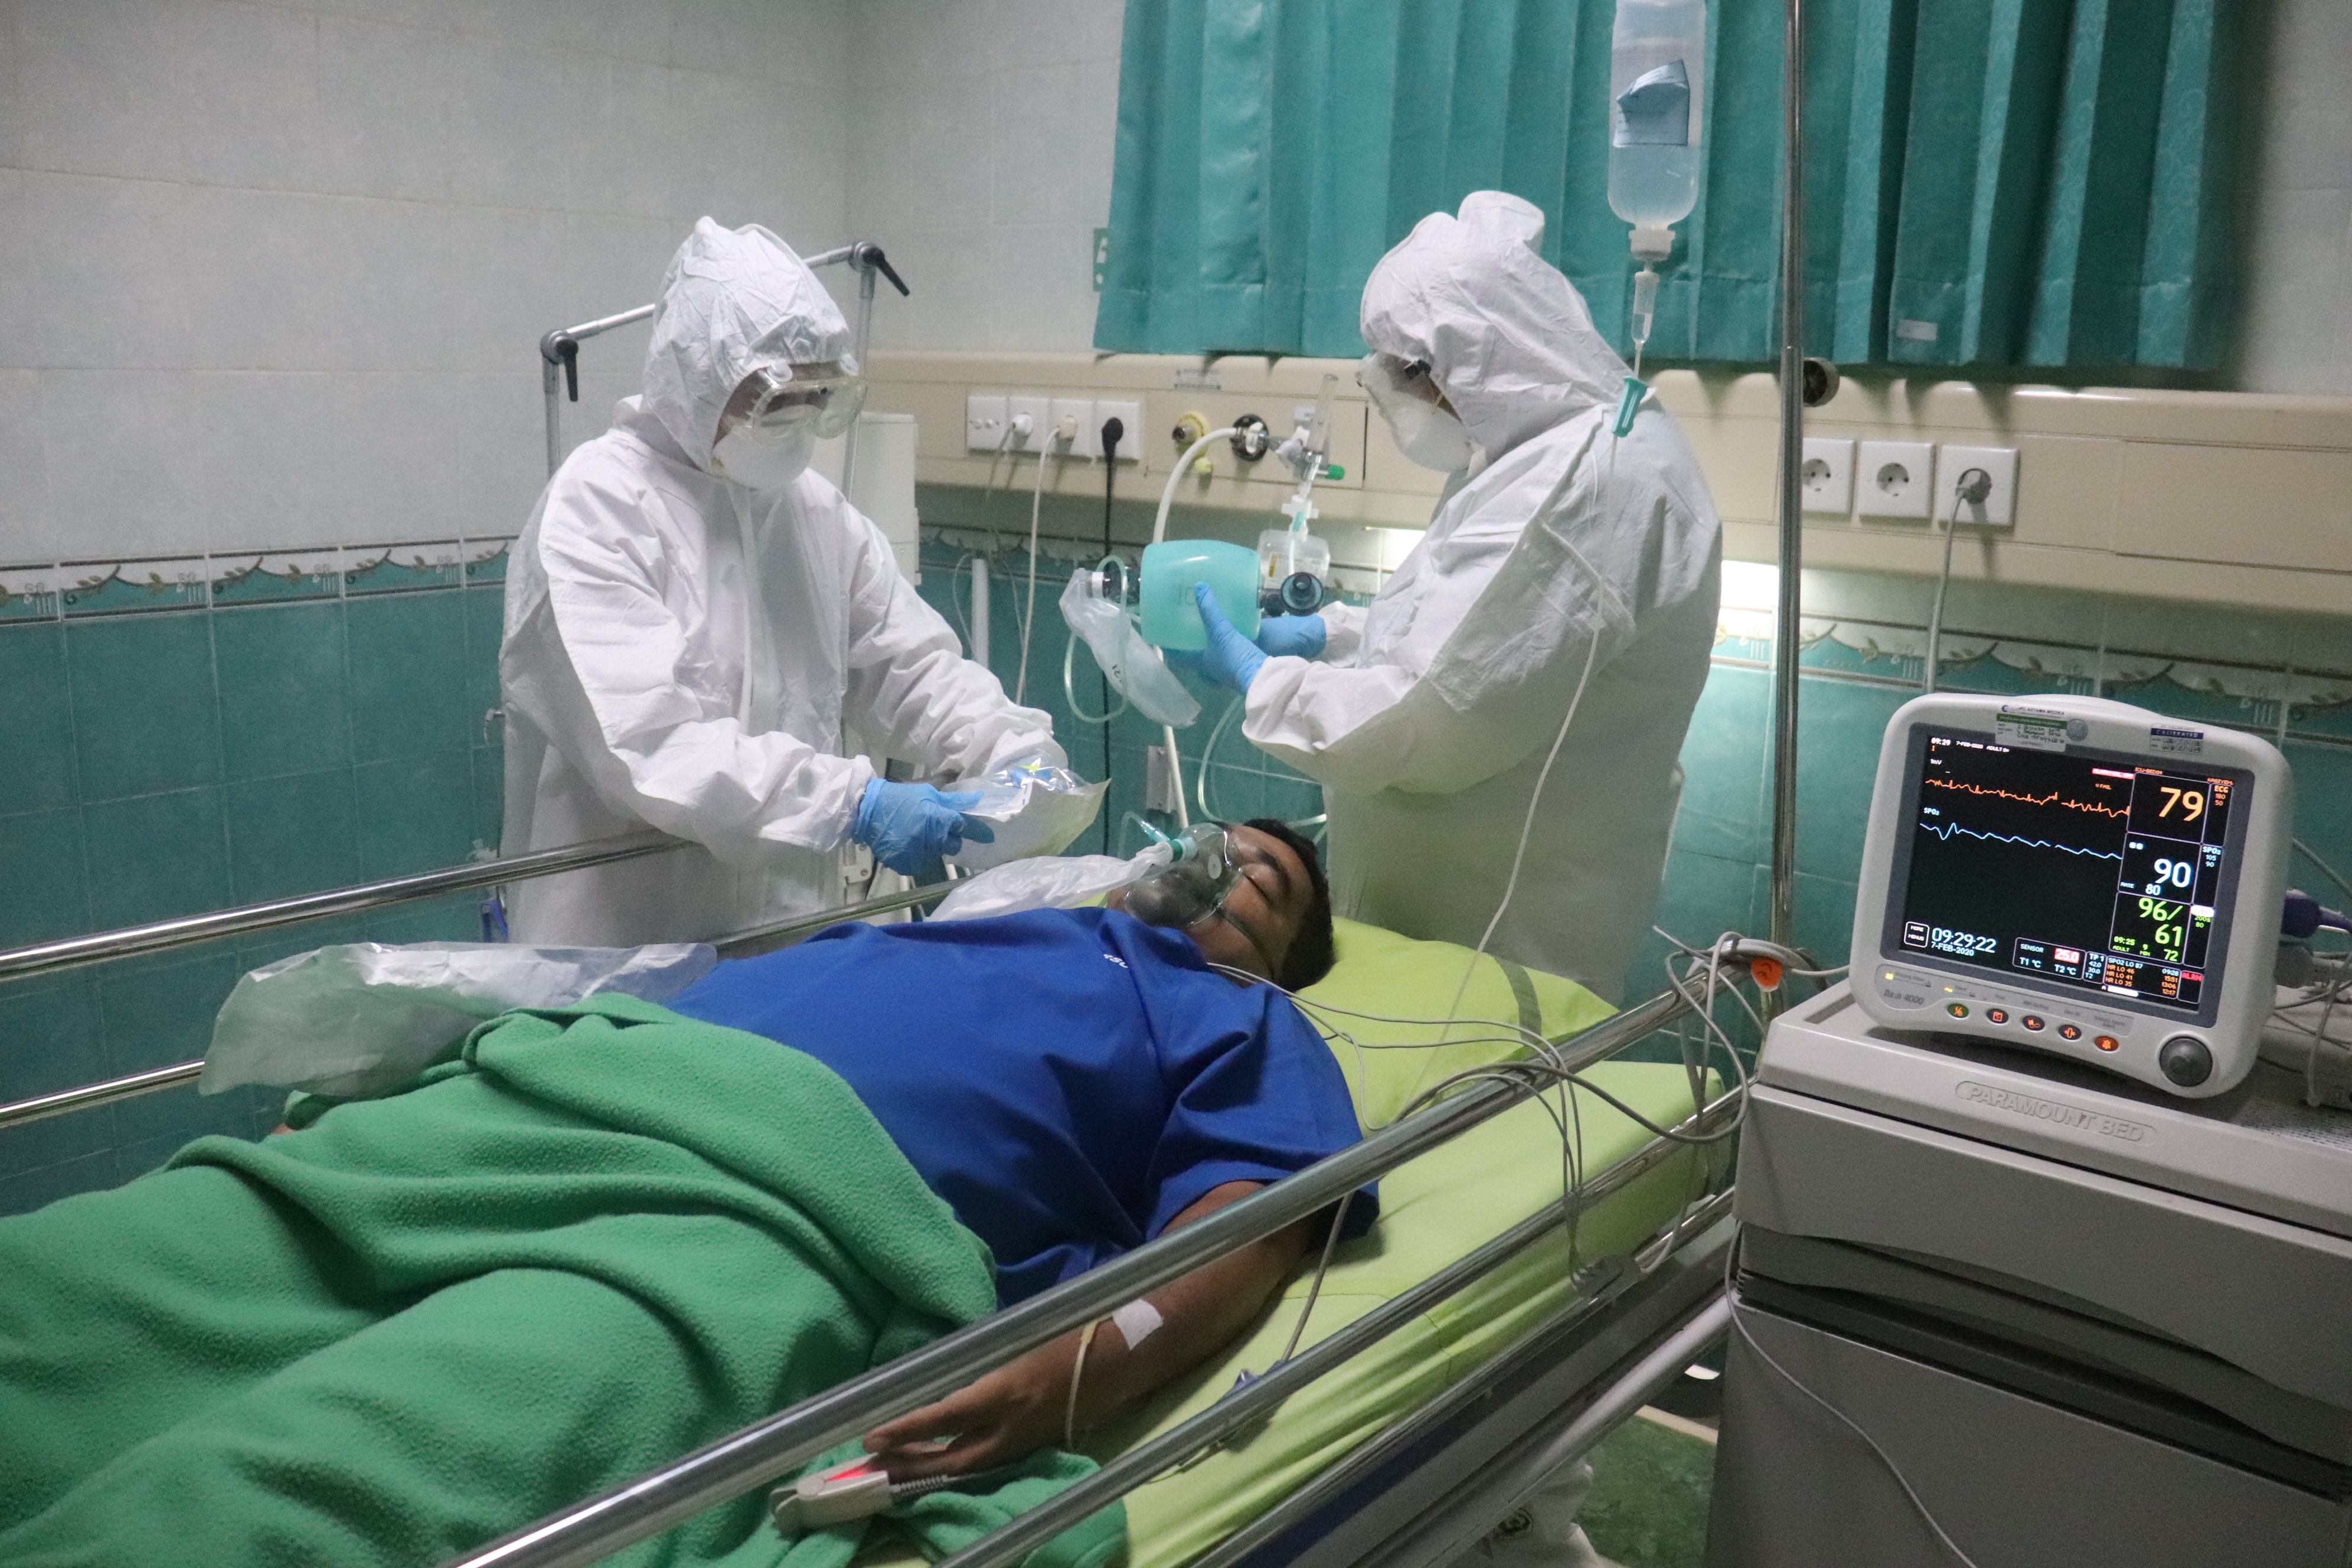 Dois enfermeiros completamente cobertos por roupas brancas de proteção atendem paciente deitado com roupa azul.